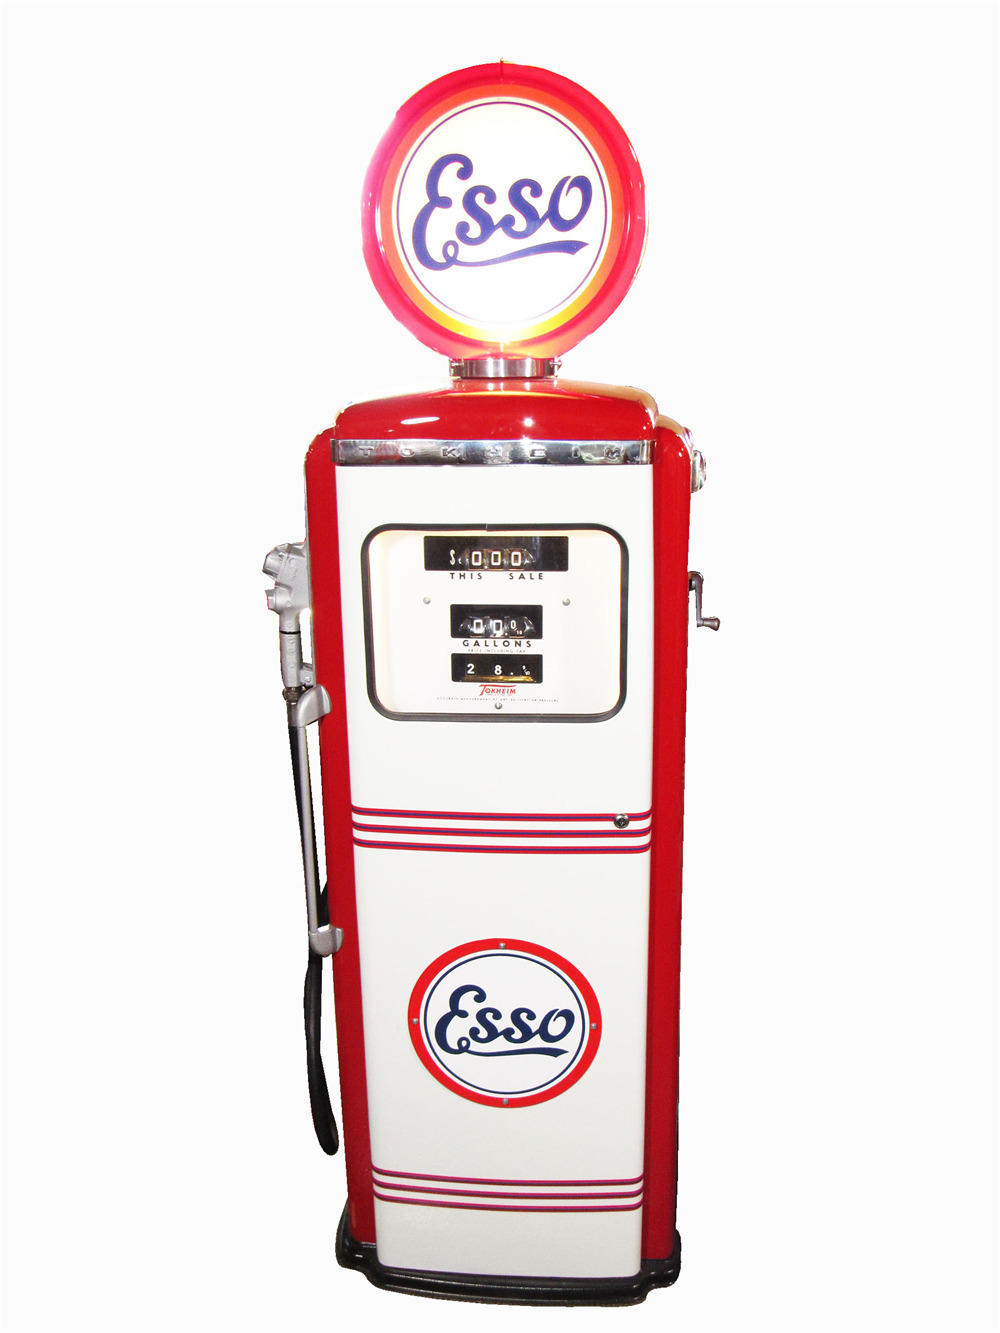 ESSO-1 24" ESSO GAS PUMP GASOLINE OIL DECAL  1926-33 